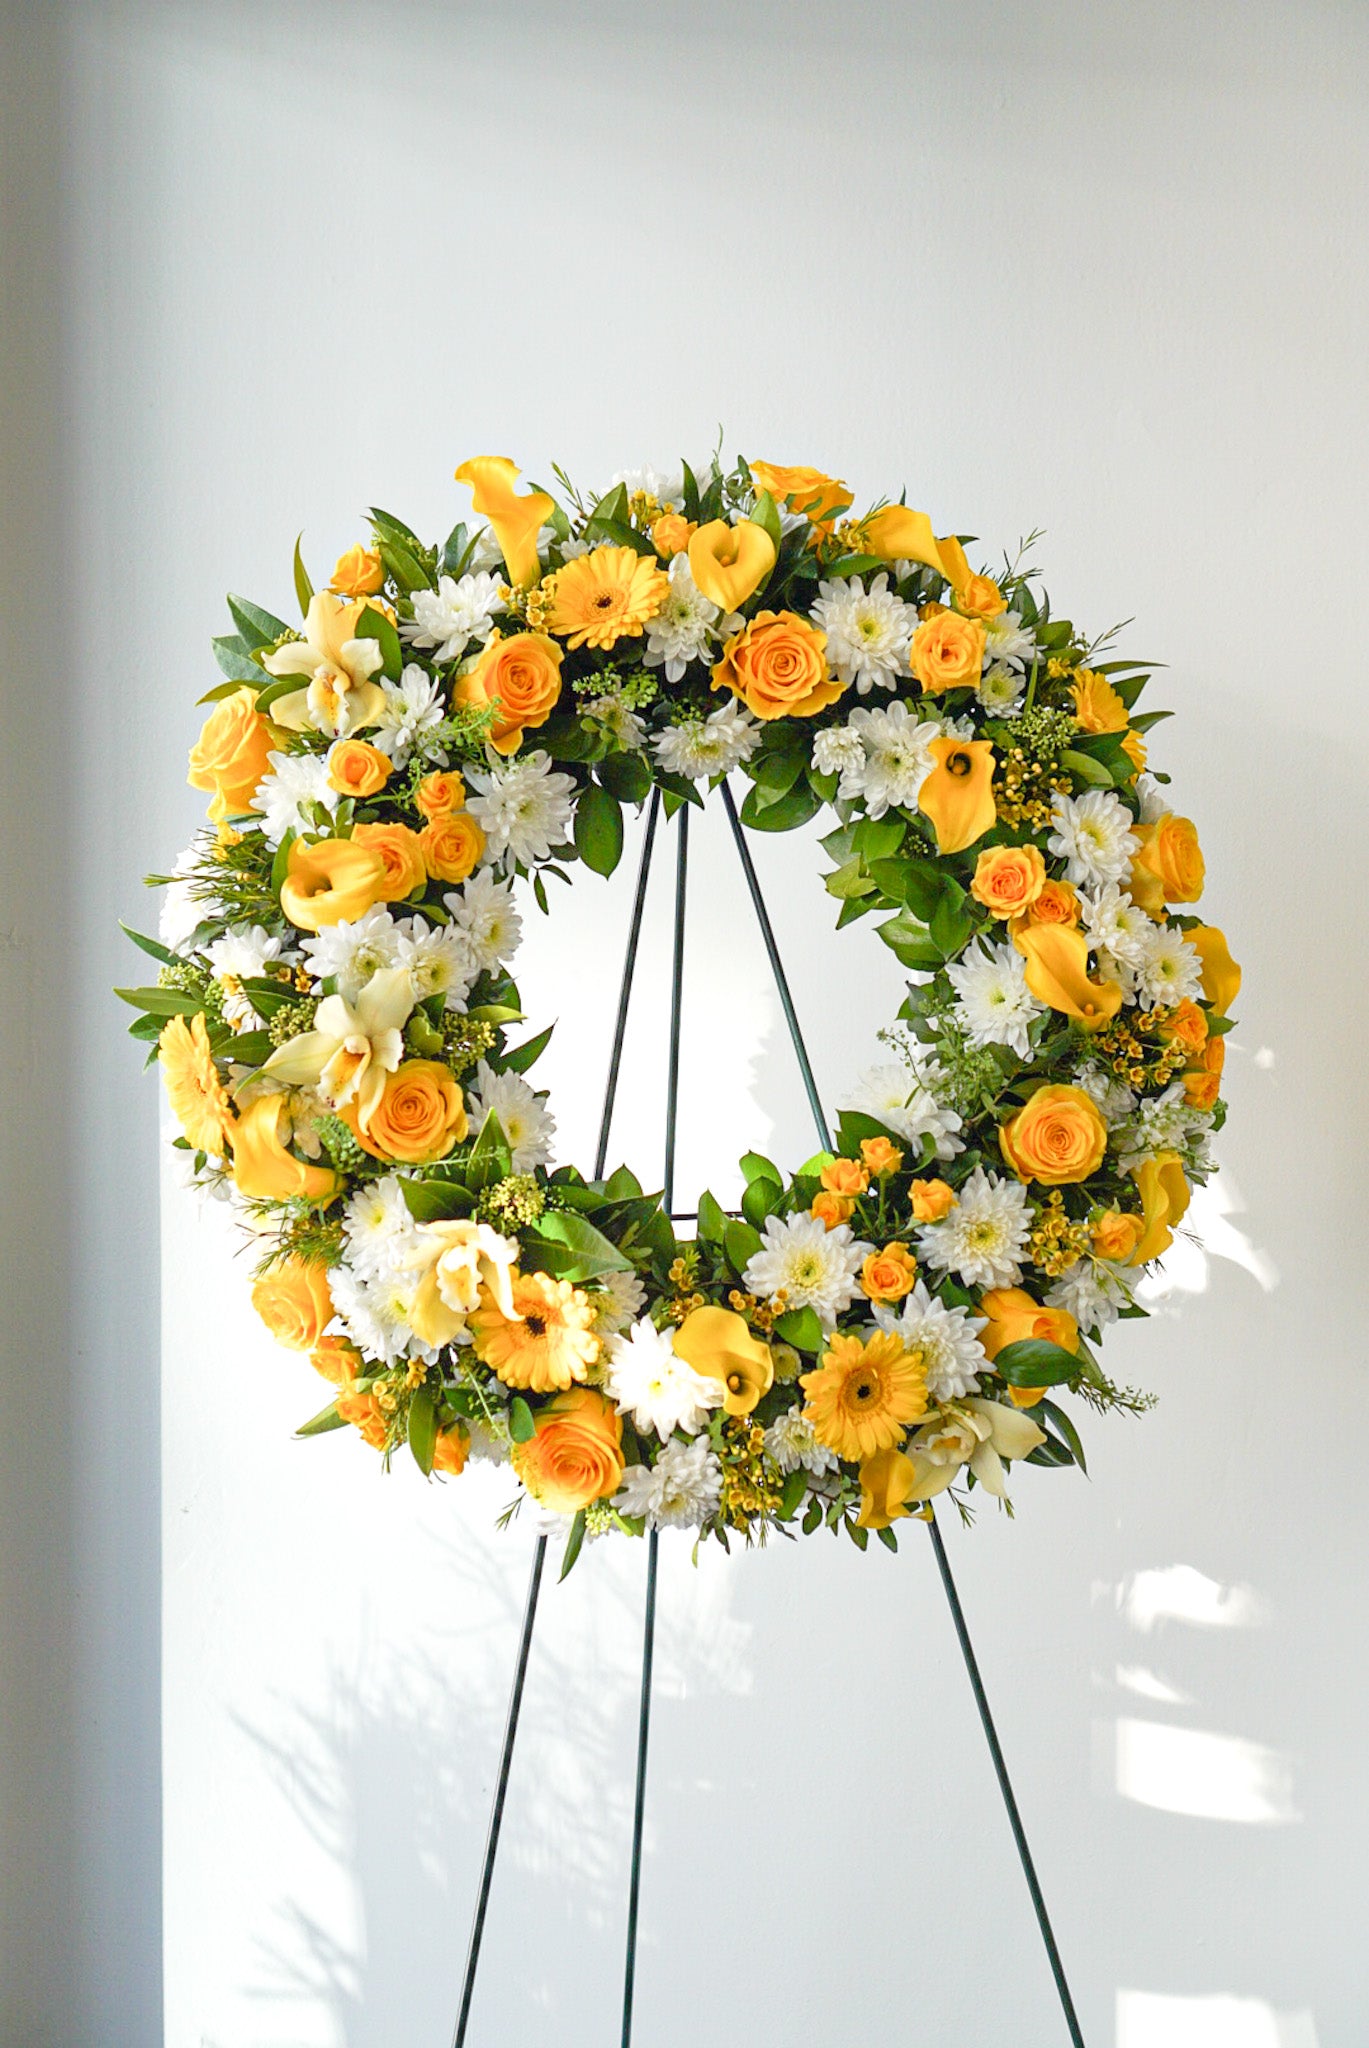 Sympathy Flowers - Graceful Wreath